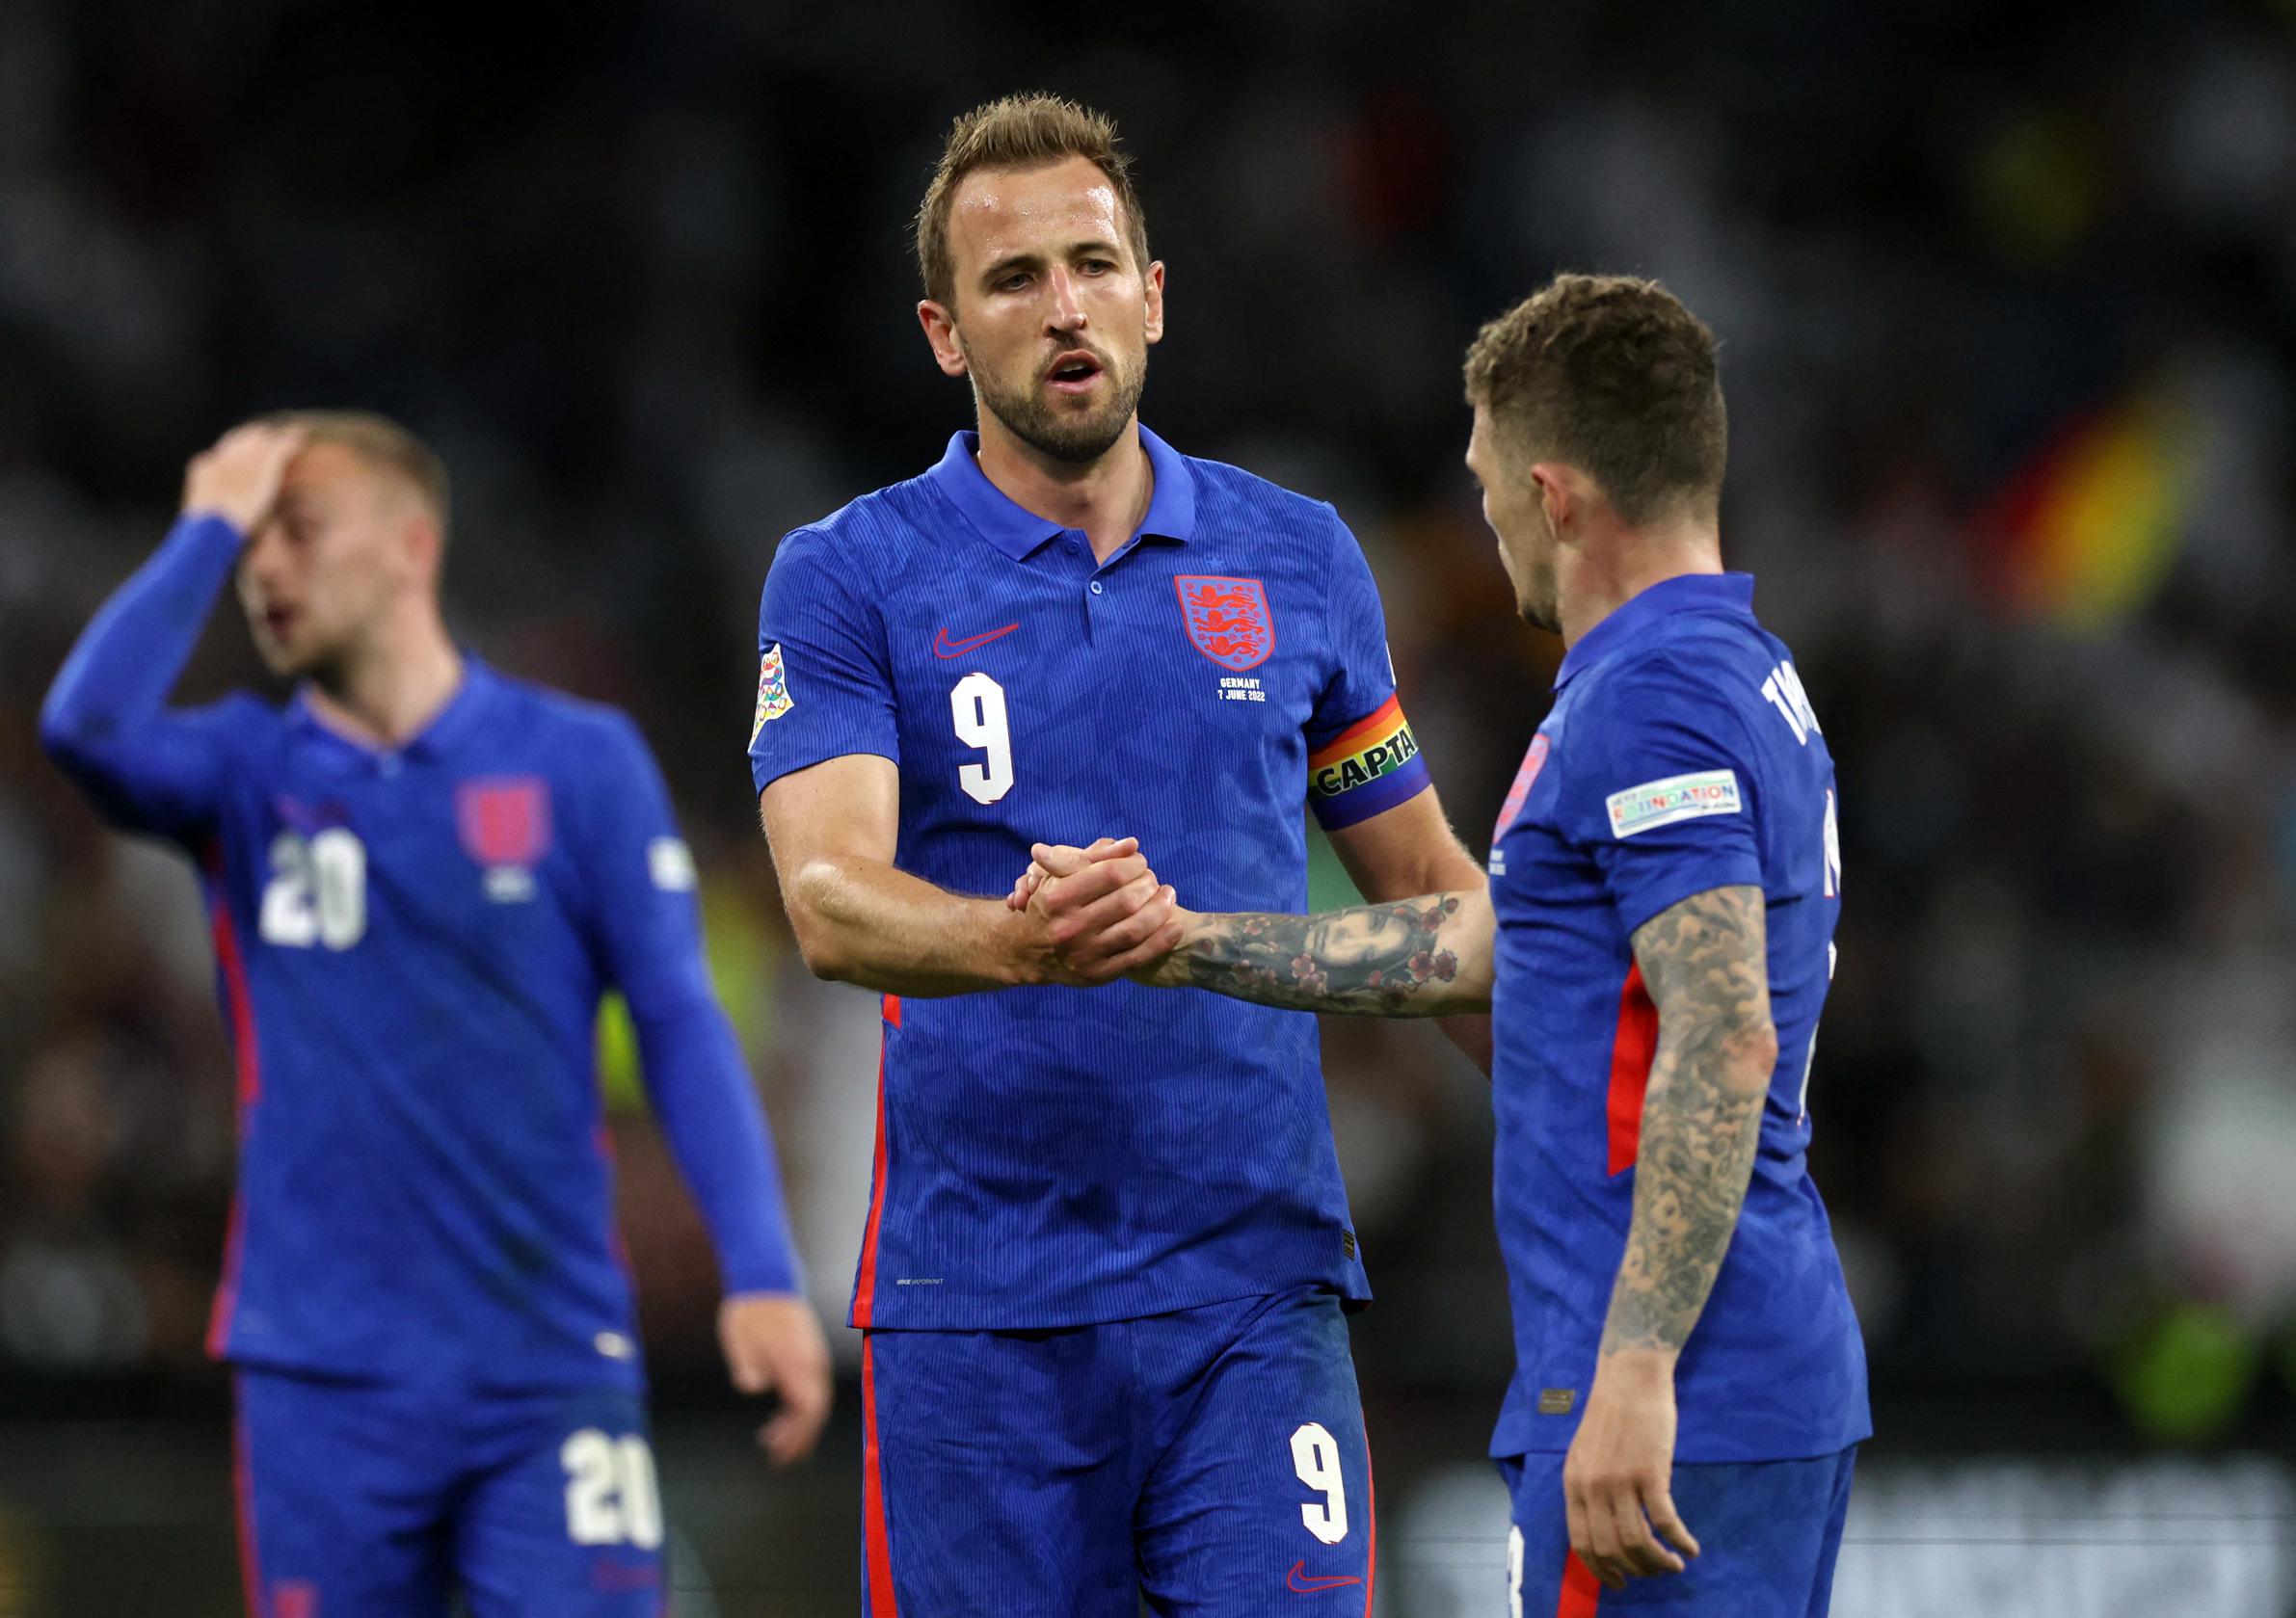 L’Inghilterra ha preso un punto contro la Germania nella Nations League e finalmente l’Italia potrebbe vincere di nuovo